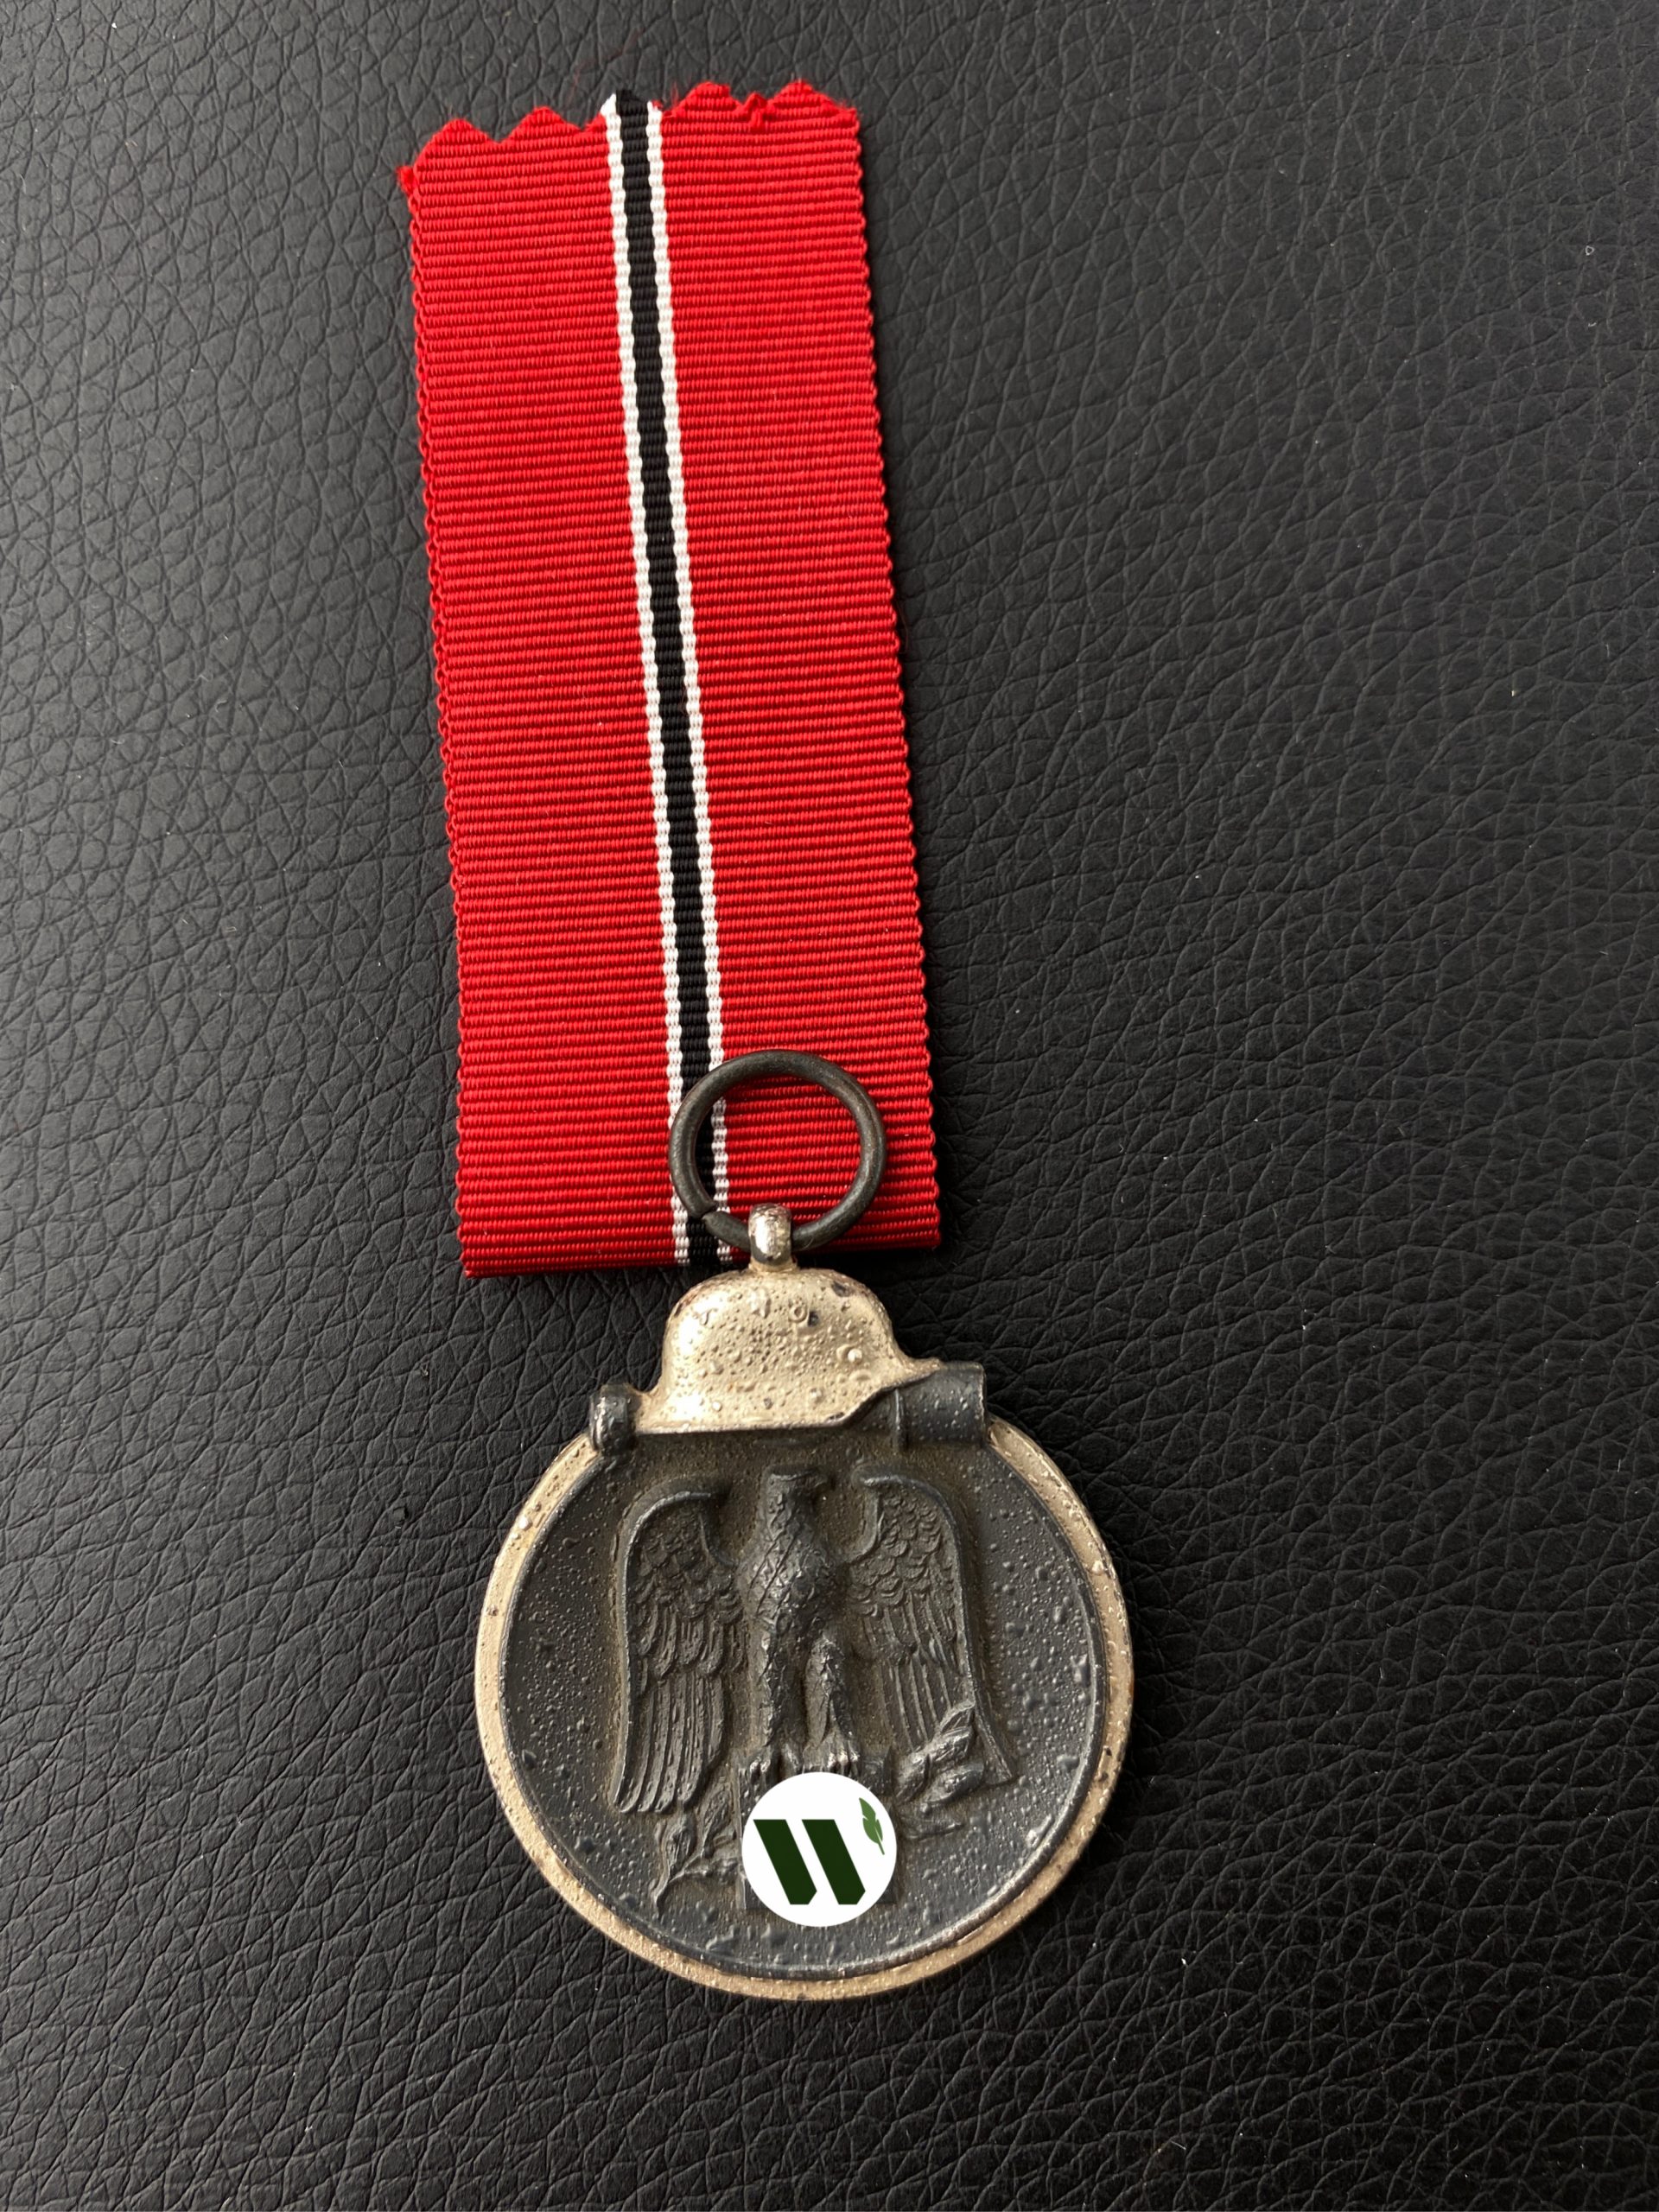 Медаль “За зимнюю кампанию на востоке 1941-42”. Минтовое состояние, клеймо “100” – Rudolf Wächtler&Lange, Mittweida.